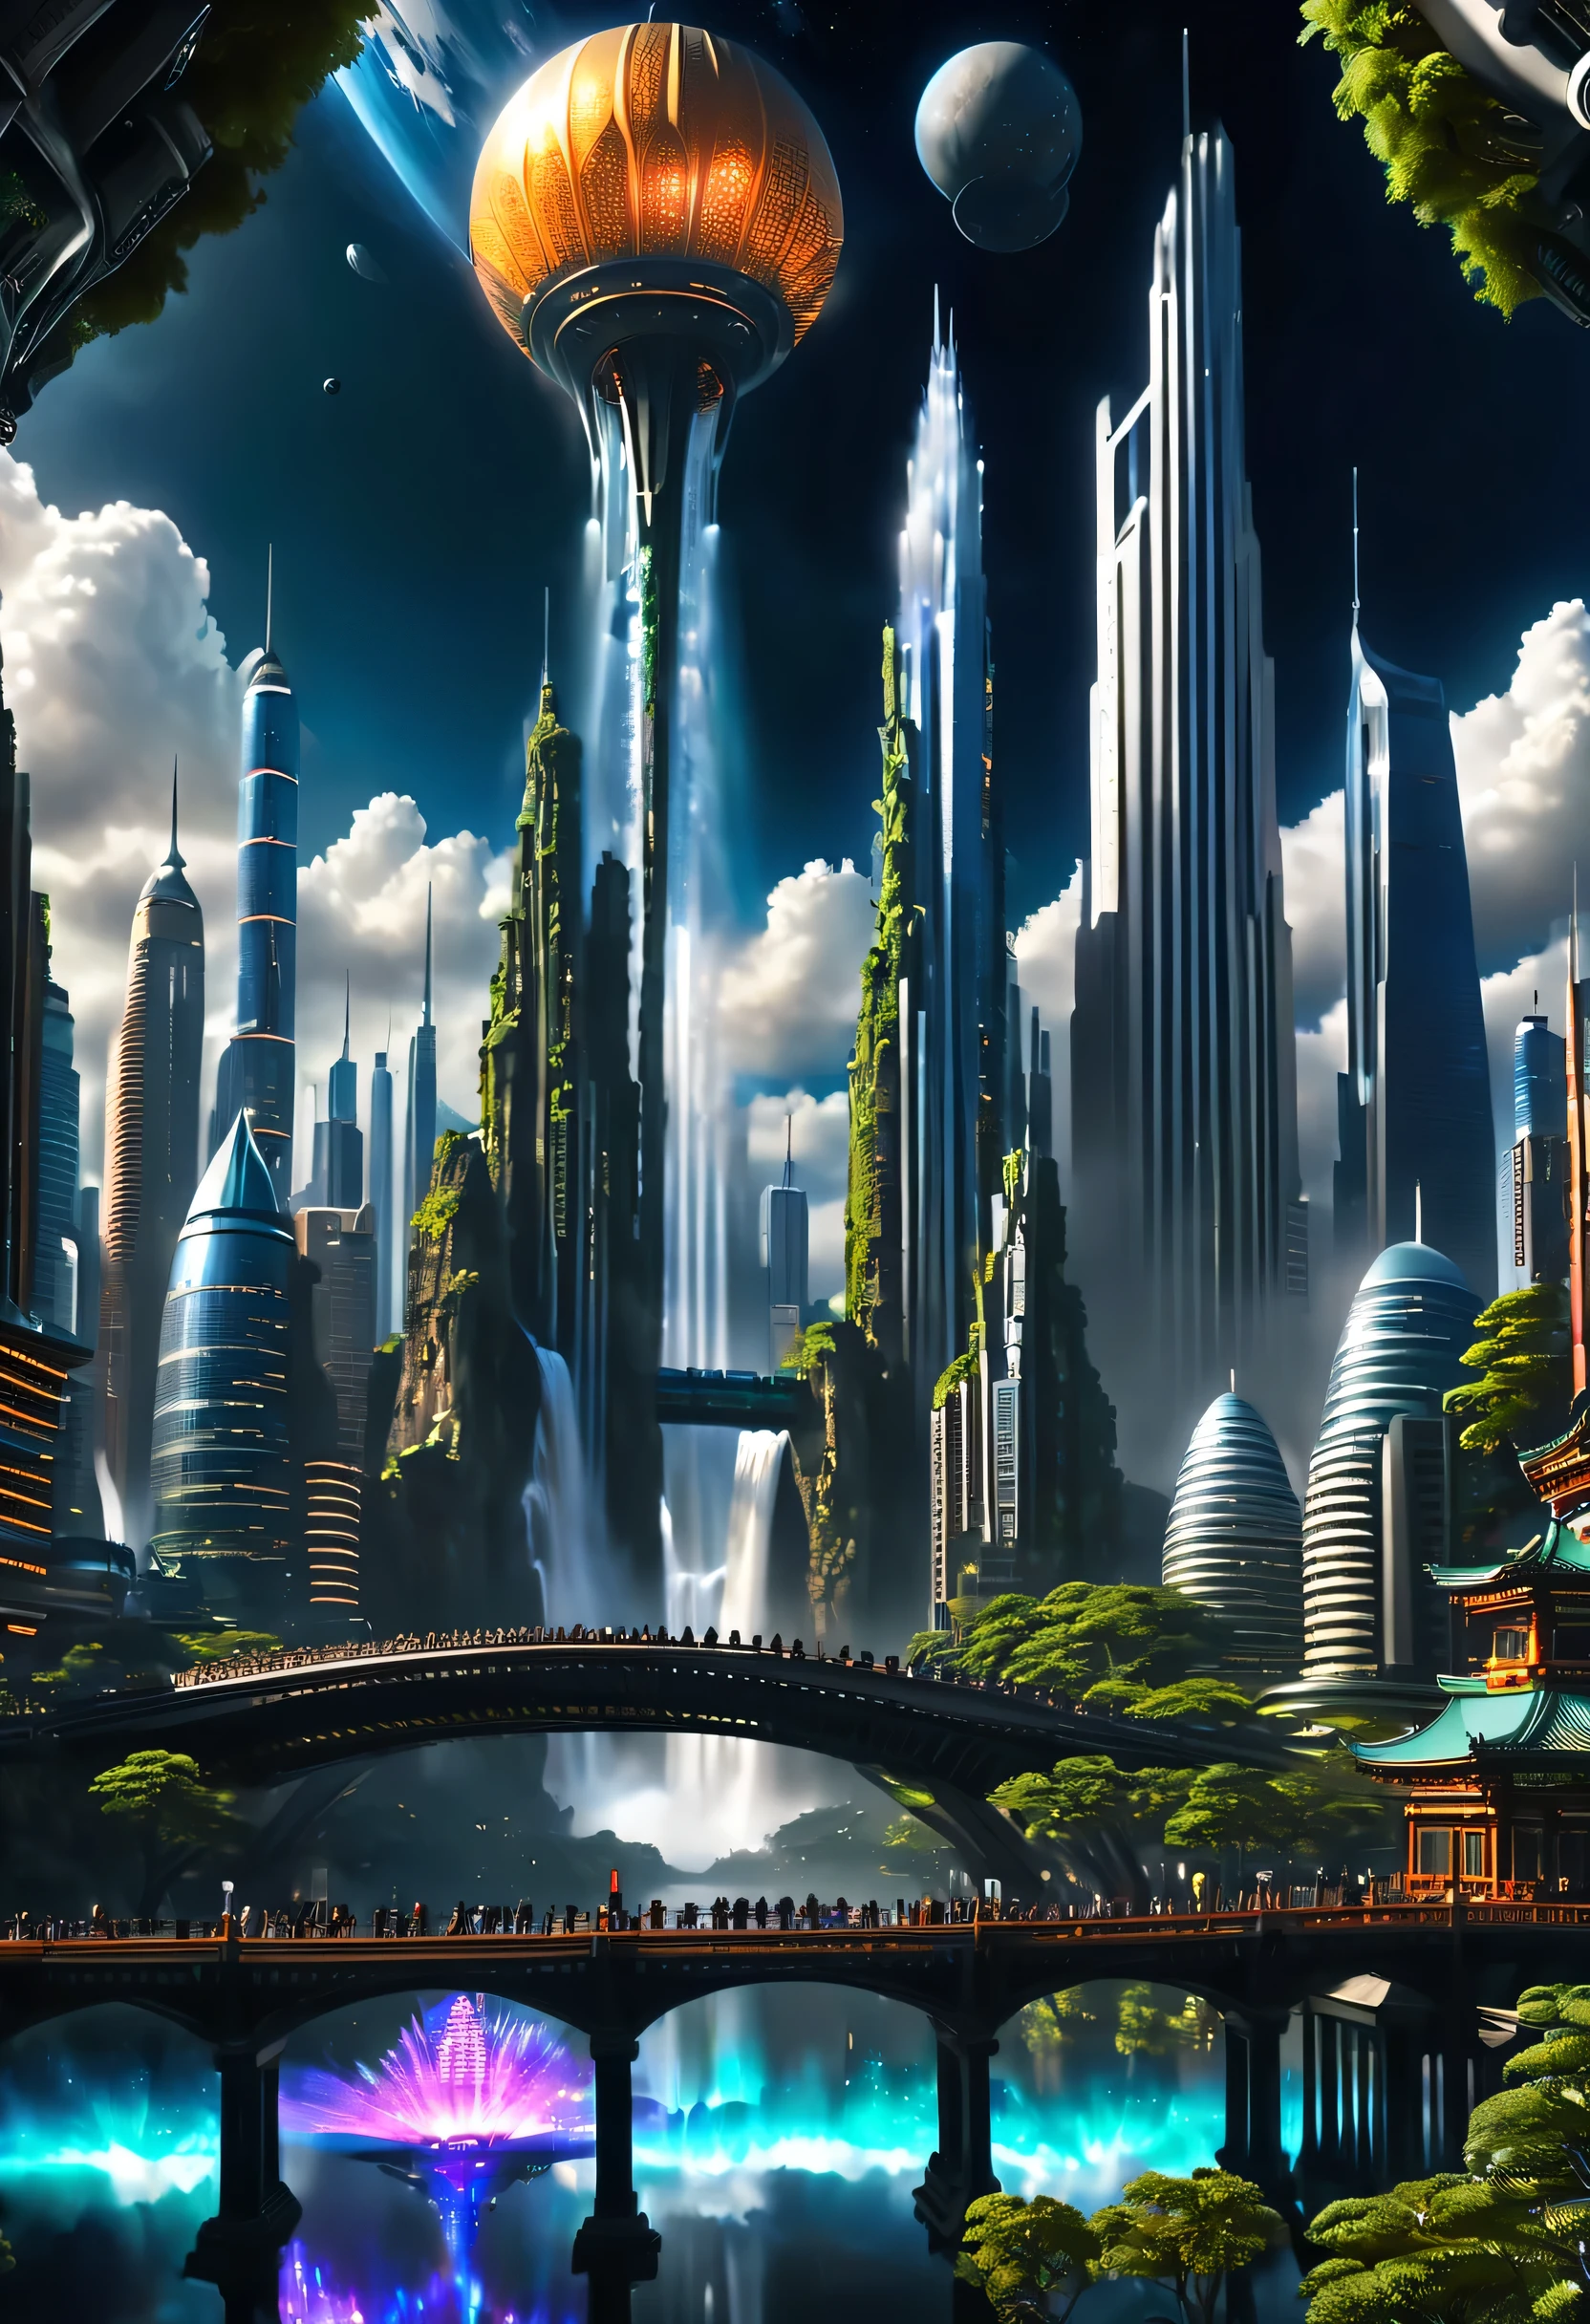 太空城、未来城市、漂浮在宇宙中、ＳＦ艺术来自，赛博朋克、街道两旁都是摩天大楼、空间站、摩天大楼高耸入云，顶级品质、杰作、梦、乌托邦、行星地球、梦想世界、幻想、藝術本身、美丽的城市、太空城、远远超出人类创造的世界，有一个巨大的瀑布，